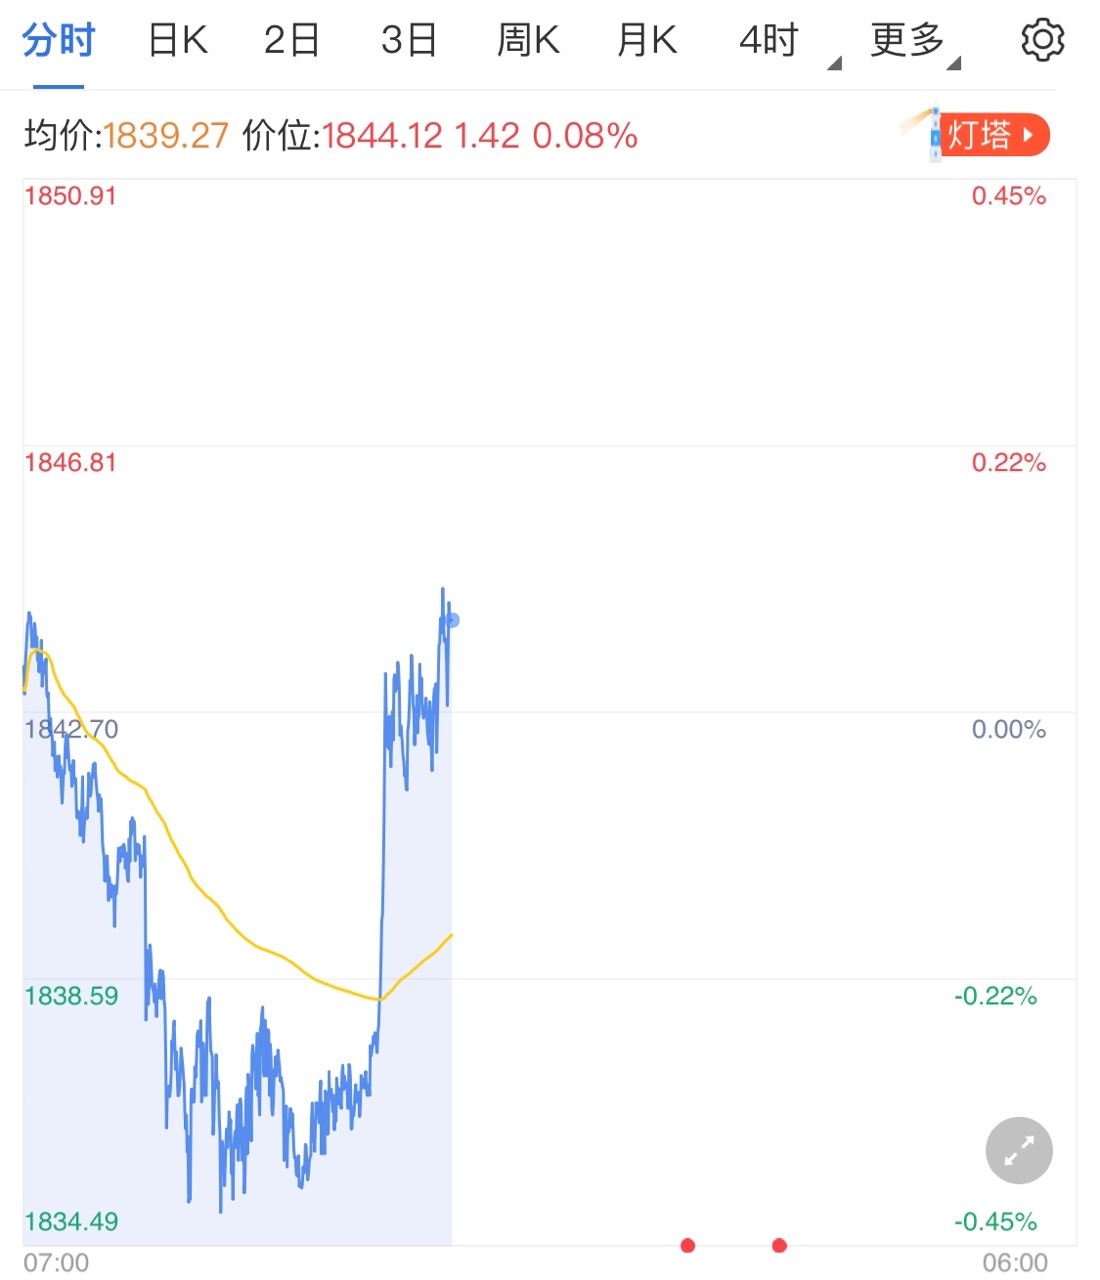 中国除夕市场清淡 黄金价格高位区间整理